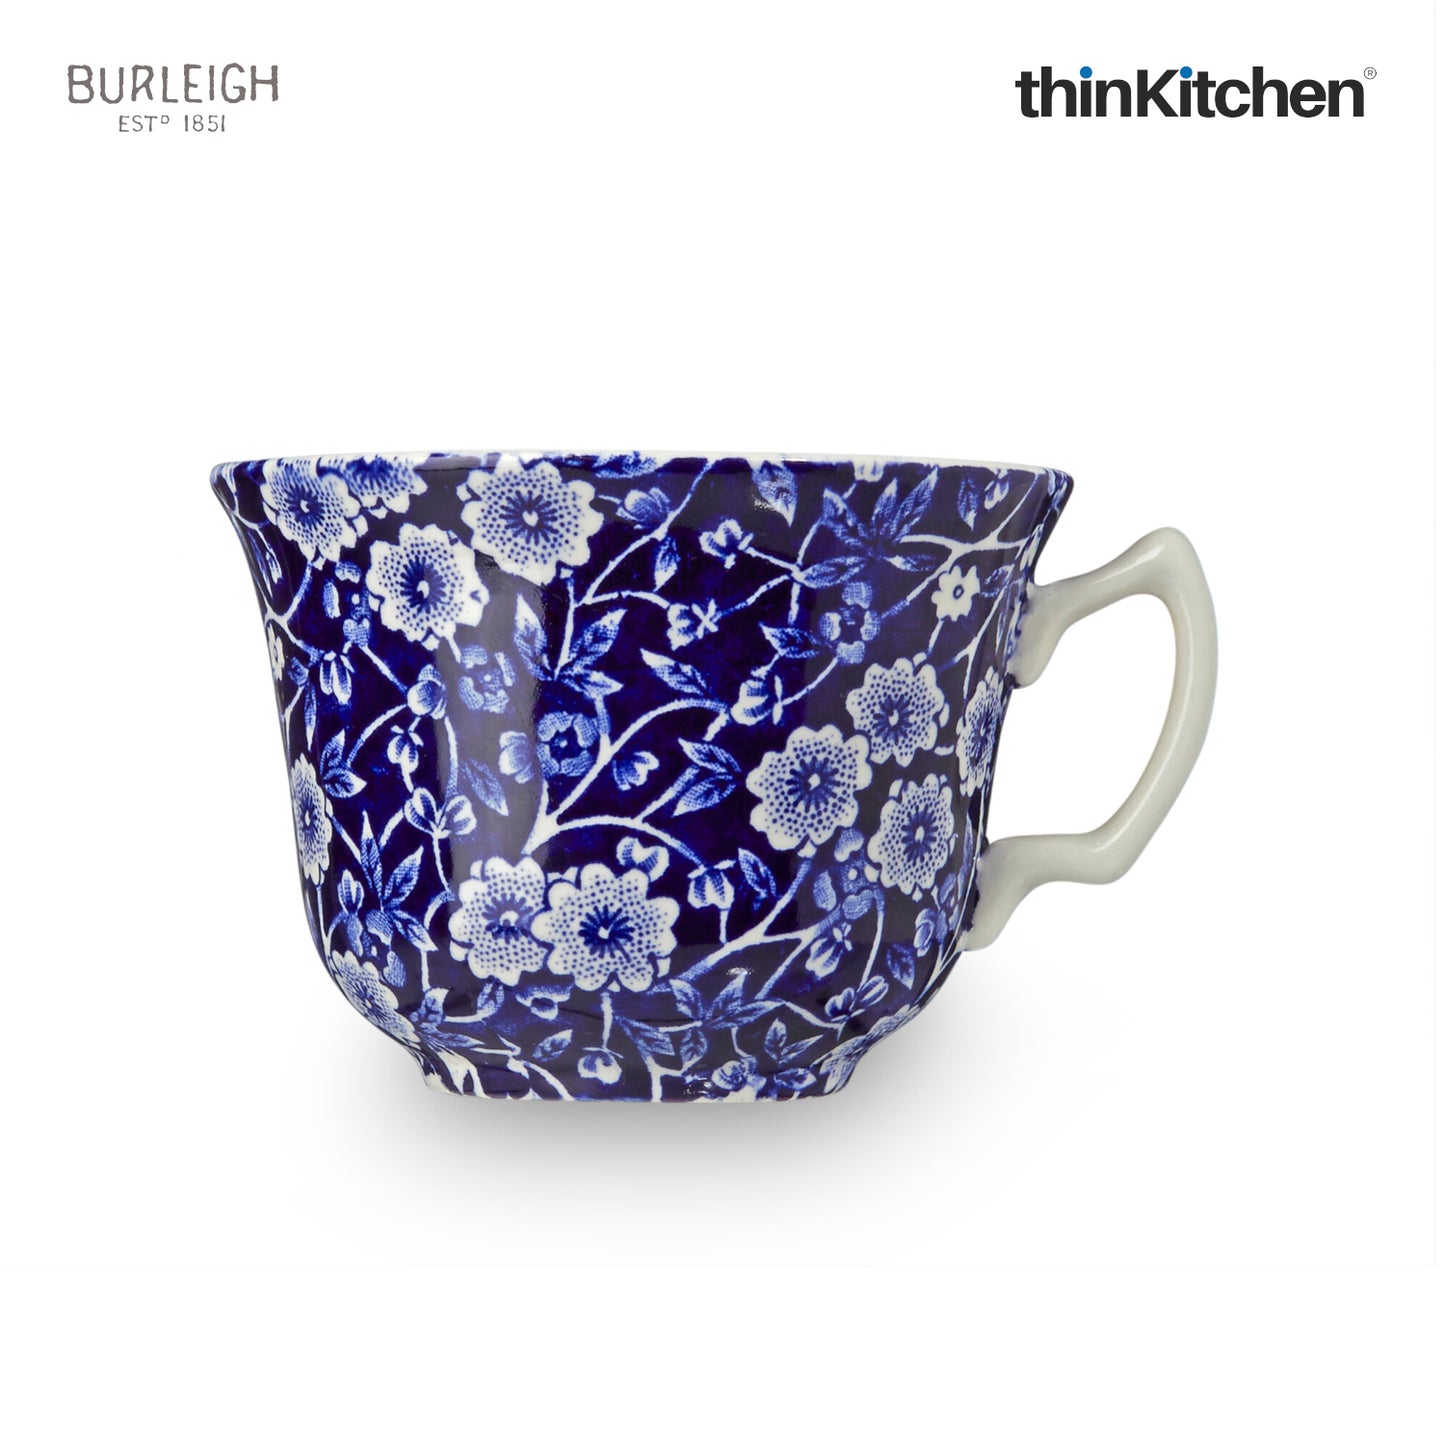 Burleigh Blue Calico Tea Cup, 187ml